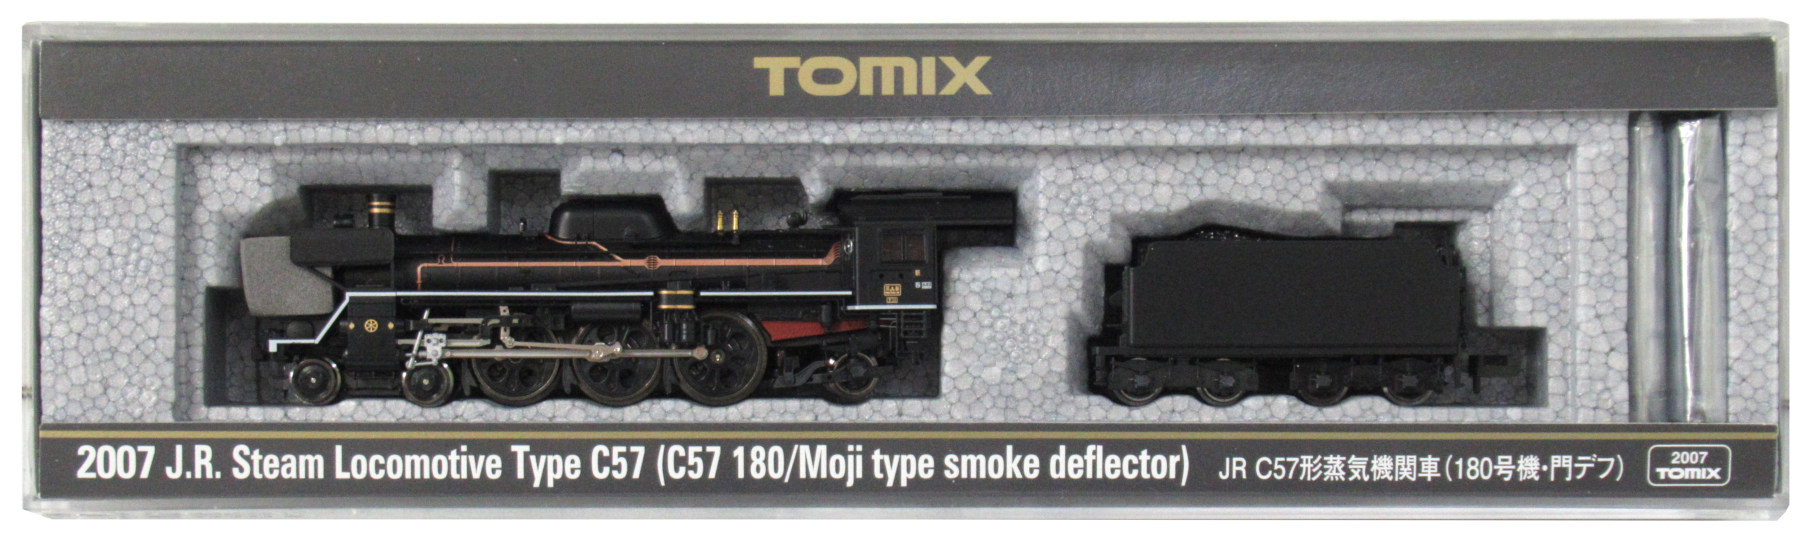 公式]鉄道模型(2007JR C57形 蒸気機関車 (180号機門デフ))商品詳細